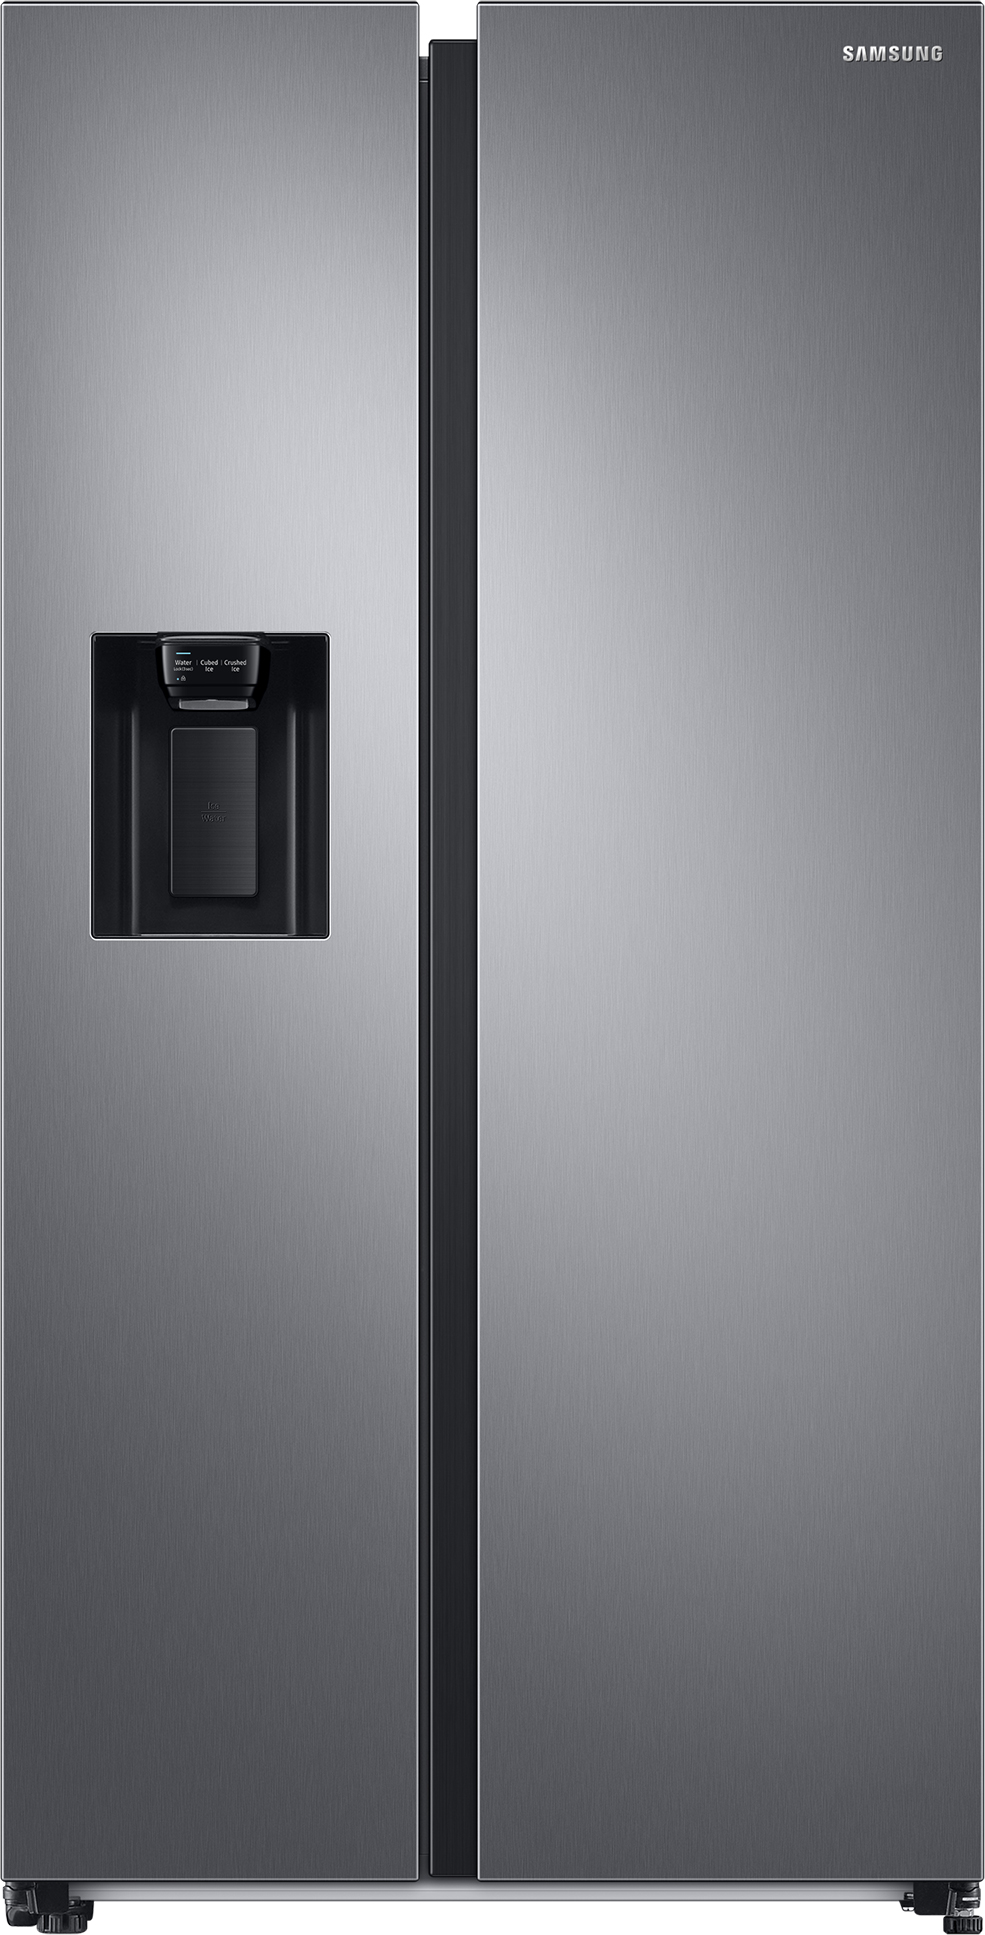 Купить холодильник Samsung RS68A8520S9/UA в Киеве